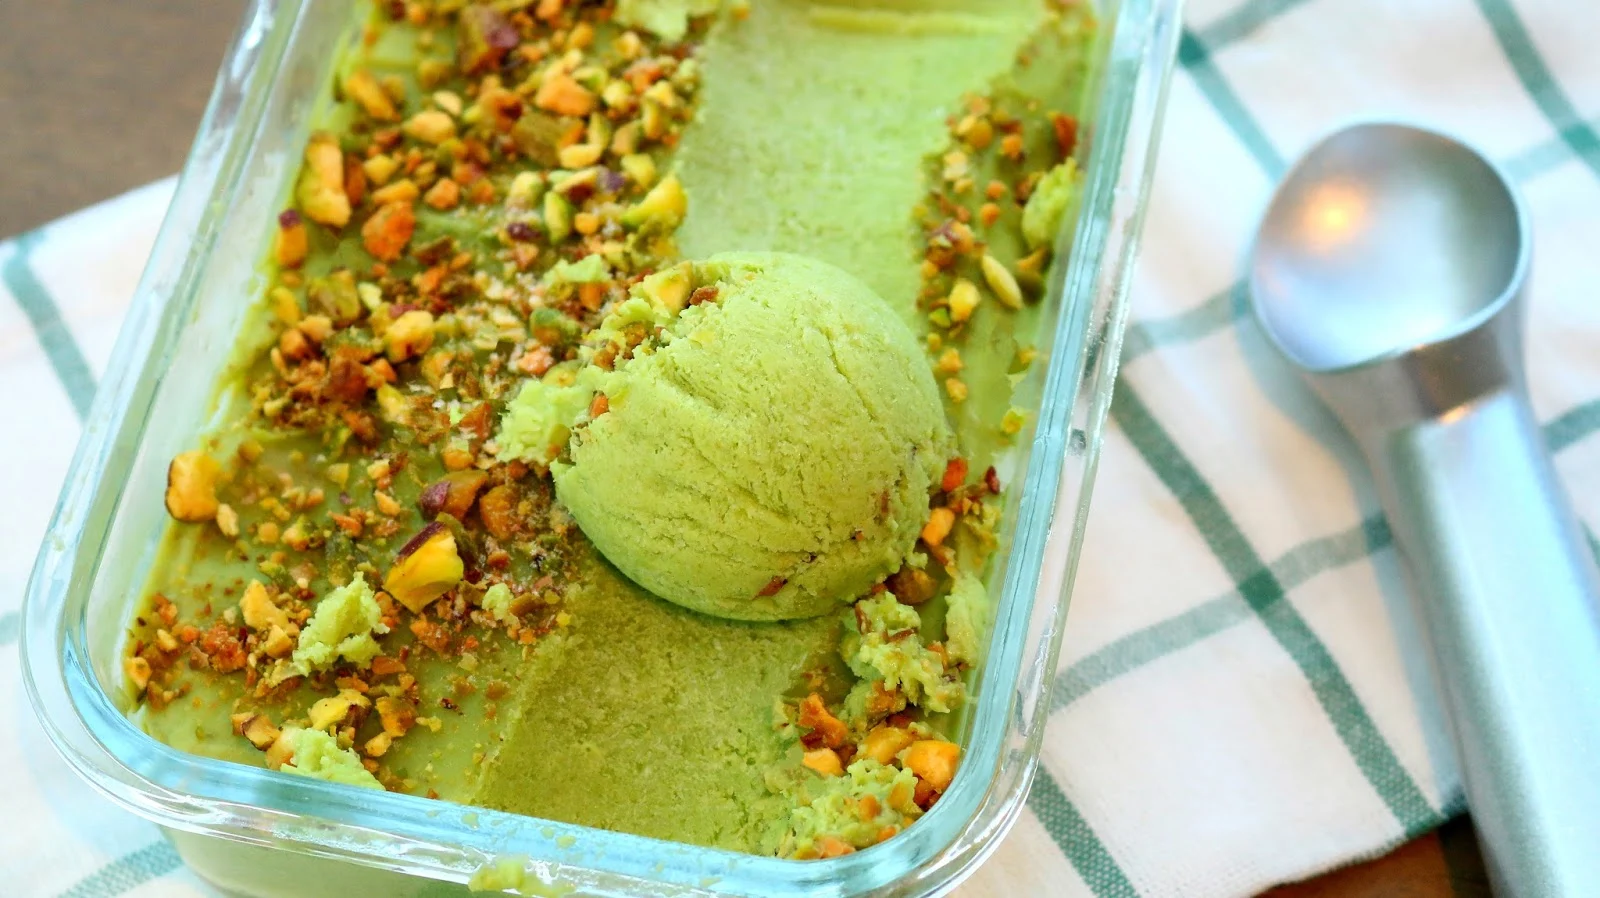 Homemade Avocado Ice Cream Recipe